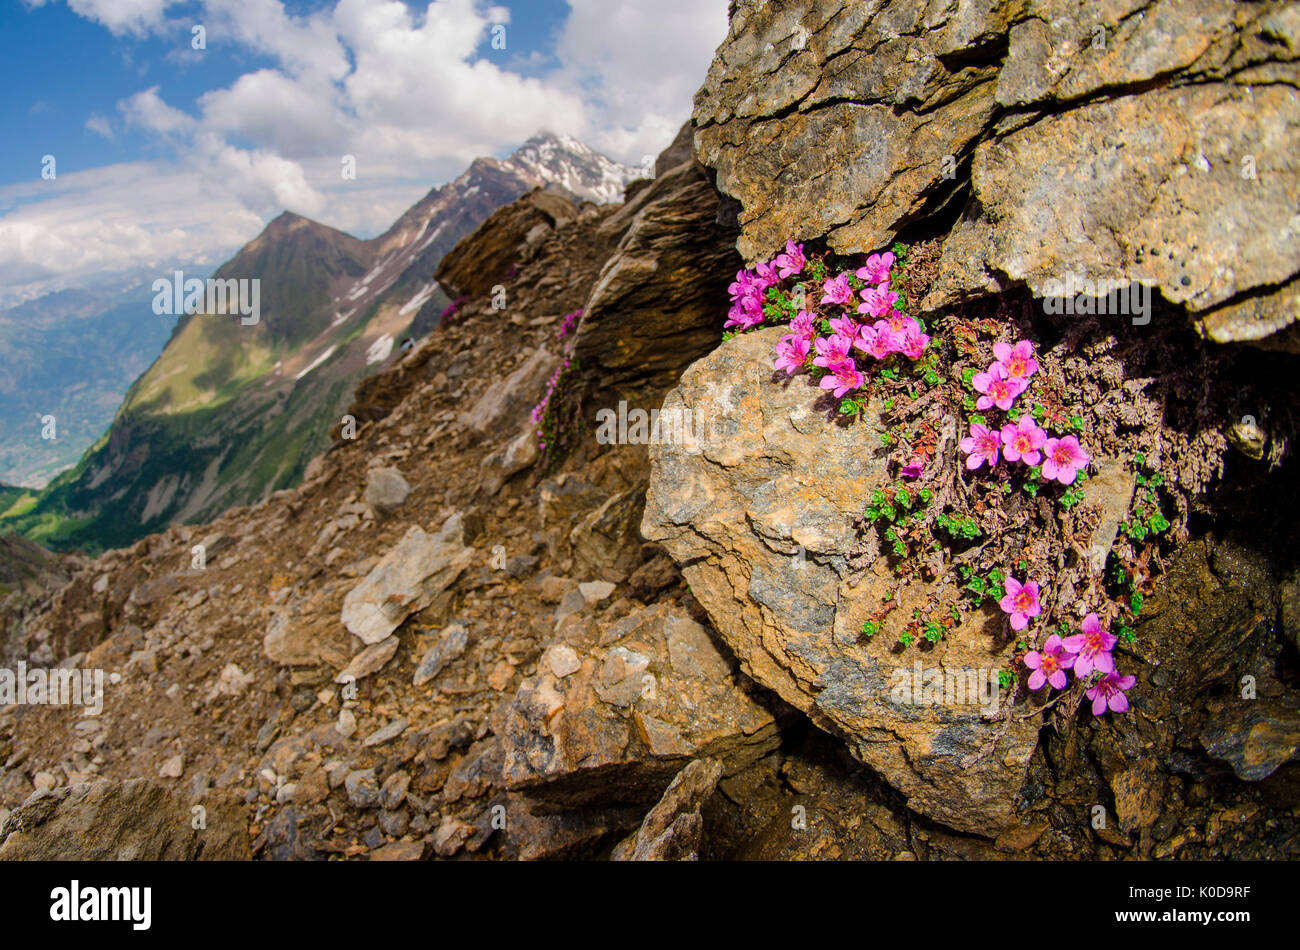 Saxifrage (Aosta Valley, Italian alps) Stock Photo